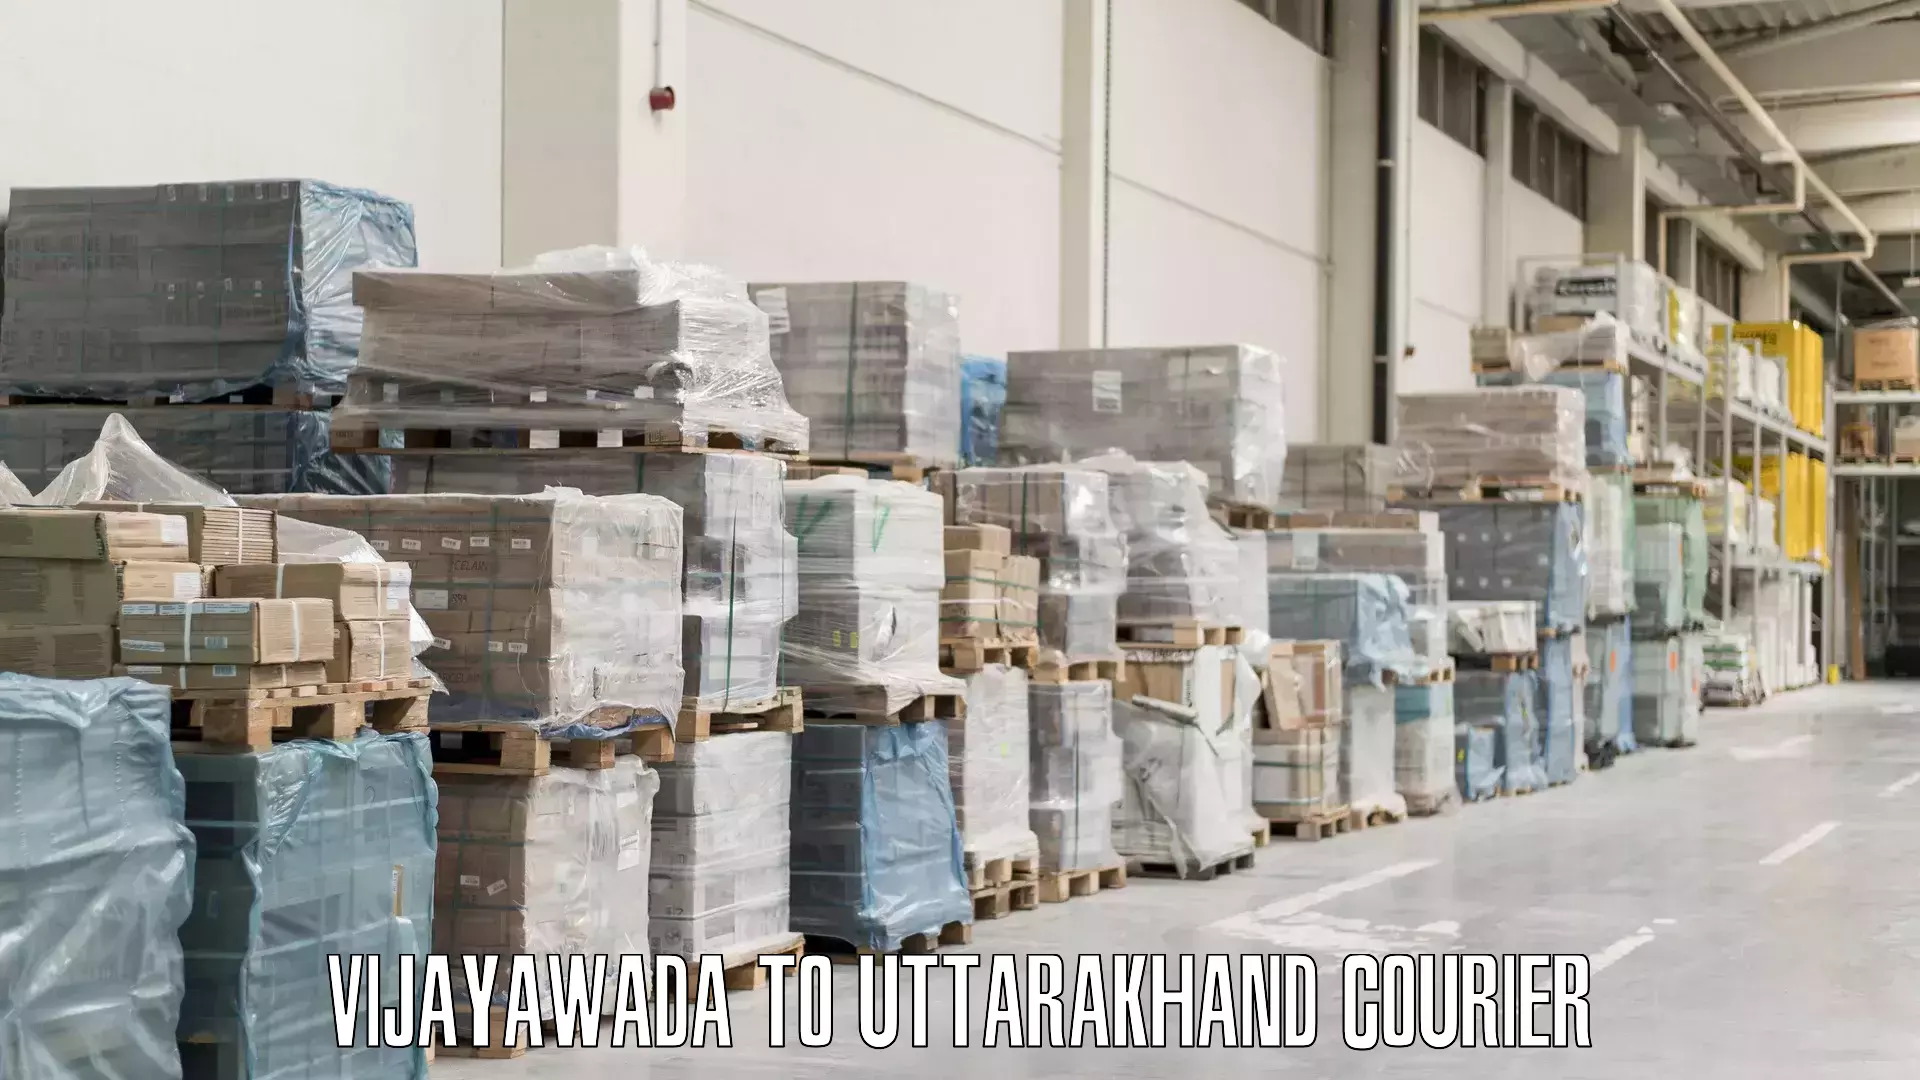 Luggage delivery system Vijayawada to Uttarakhand